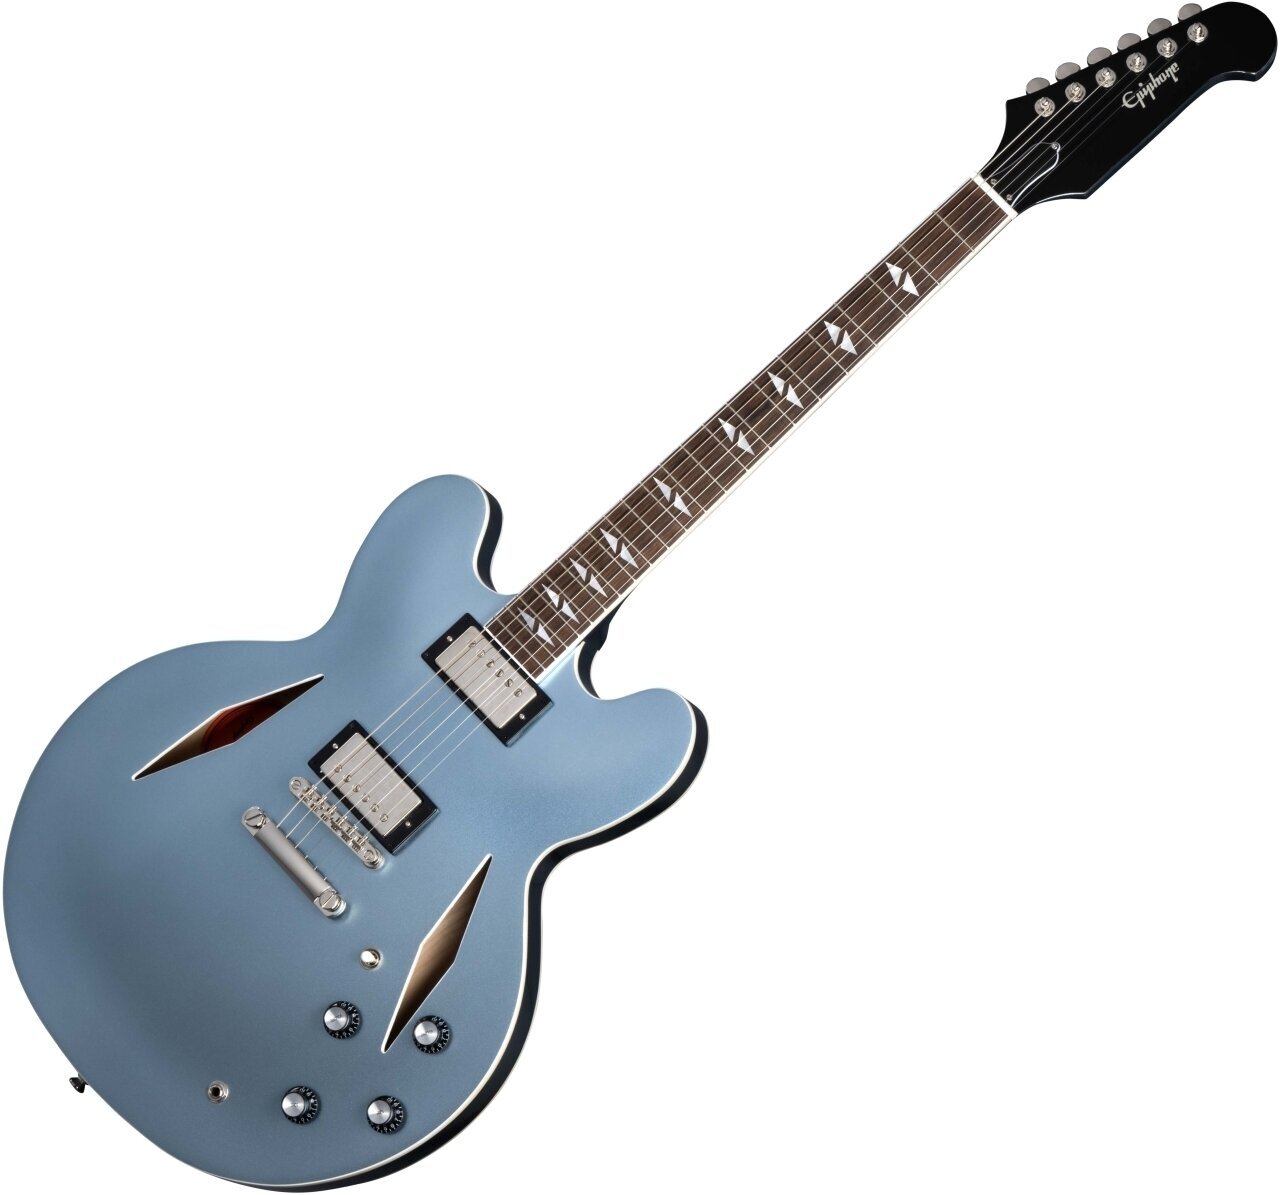 Semiakustická gitara Epiphone Dave Grohl DG-335 Pelham Blue